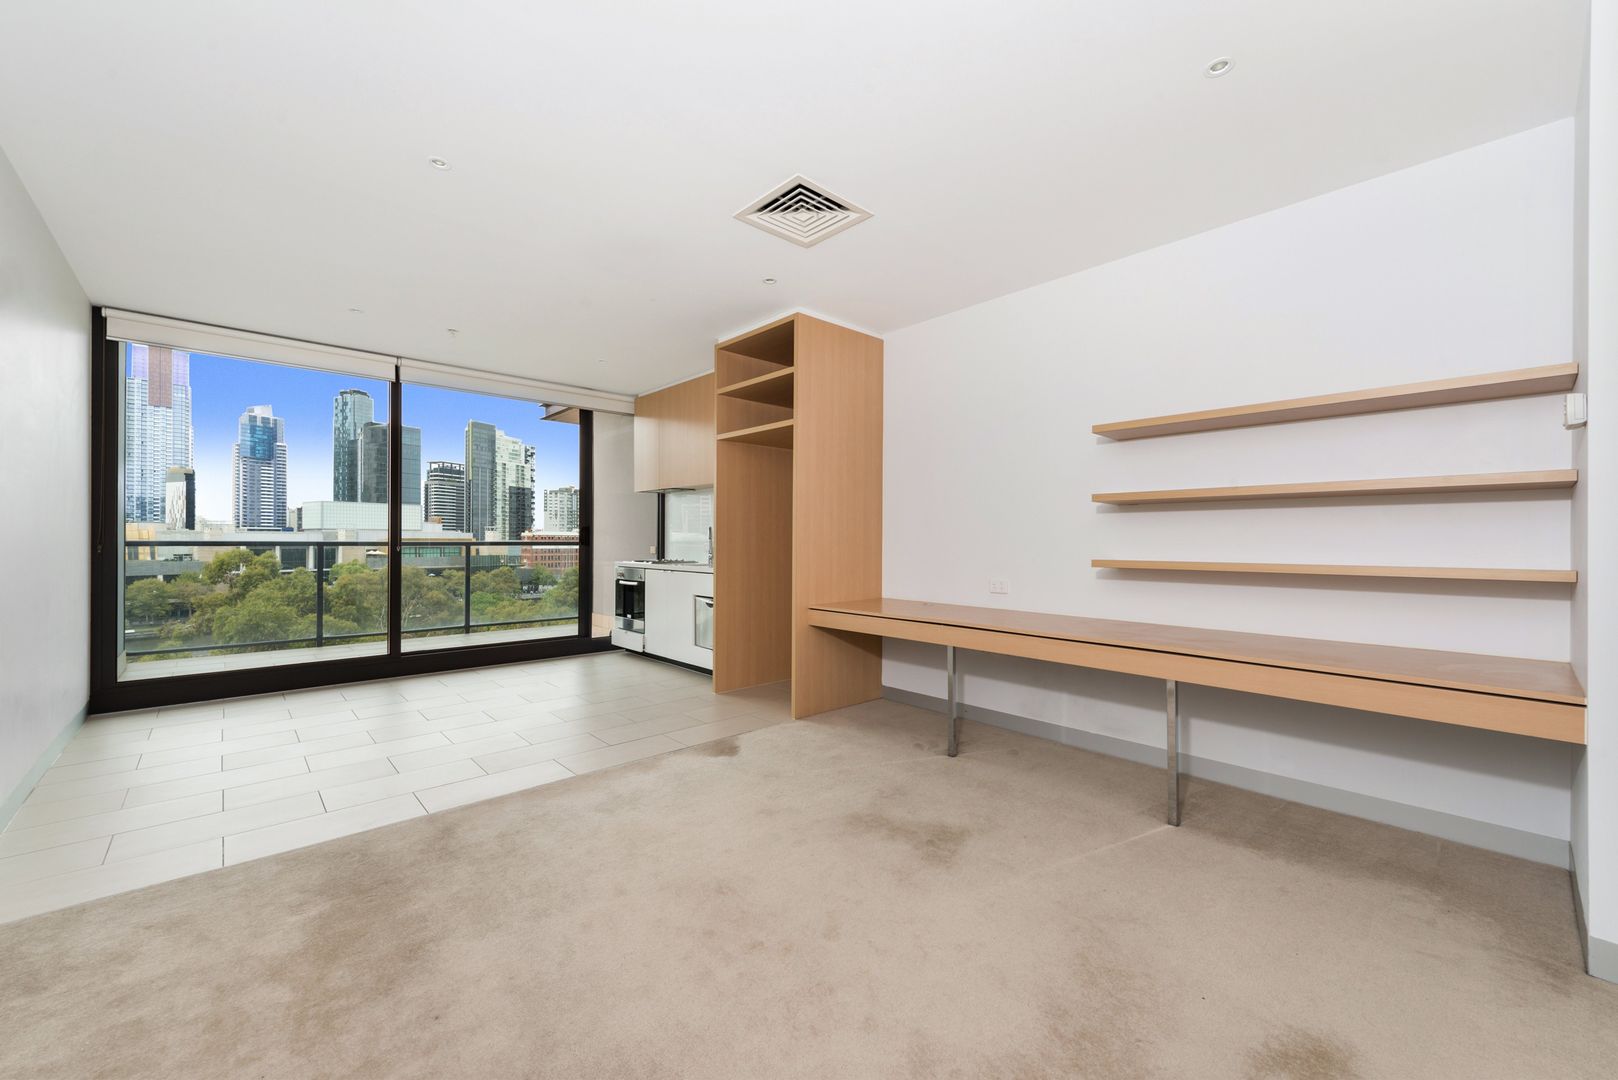 1 bedrooms House in 722/555 Flinders Street MELBOURNE VIC, 3000